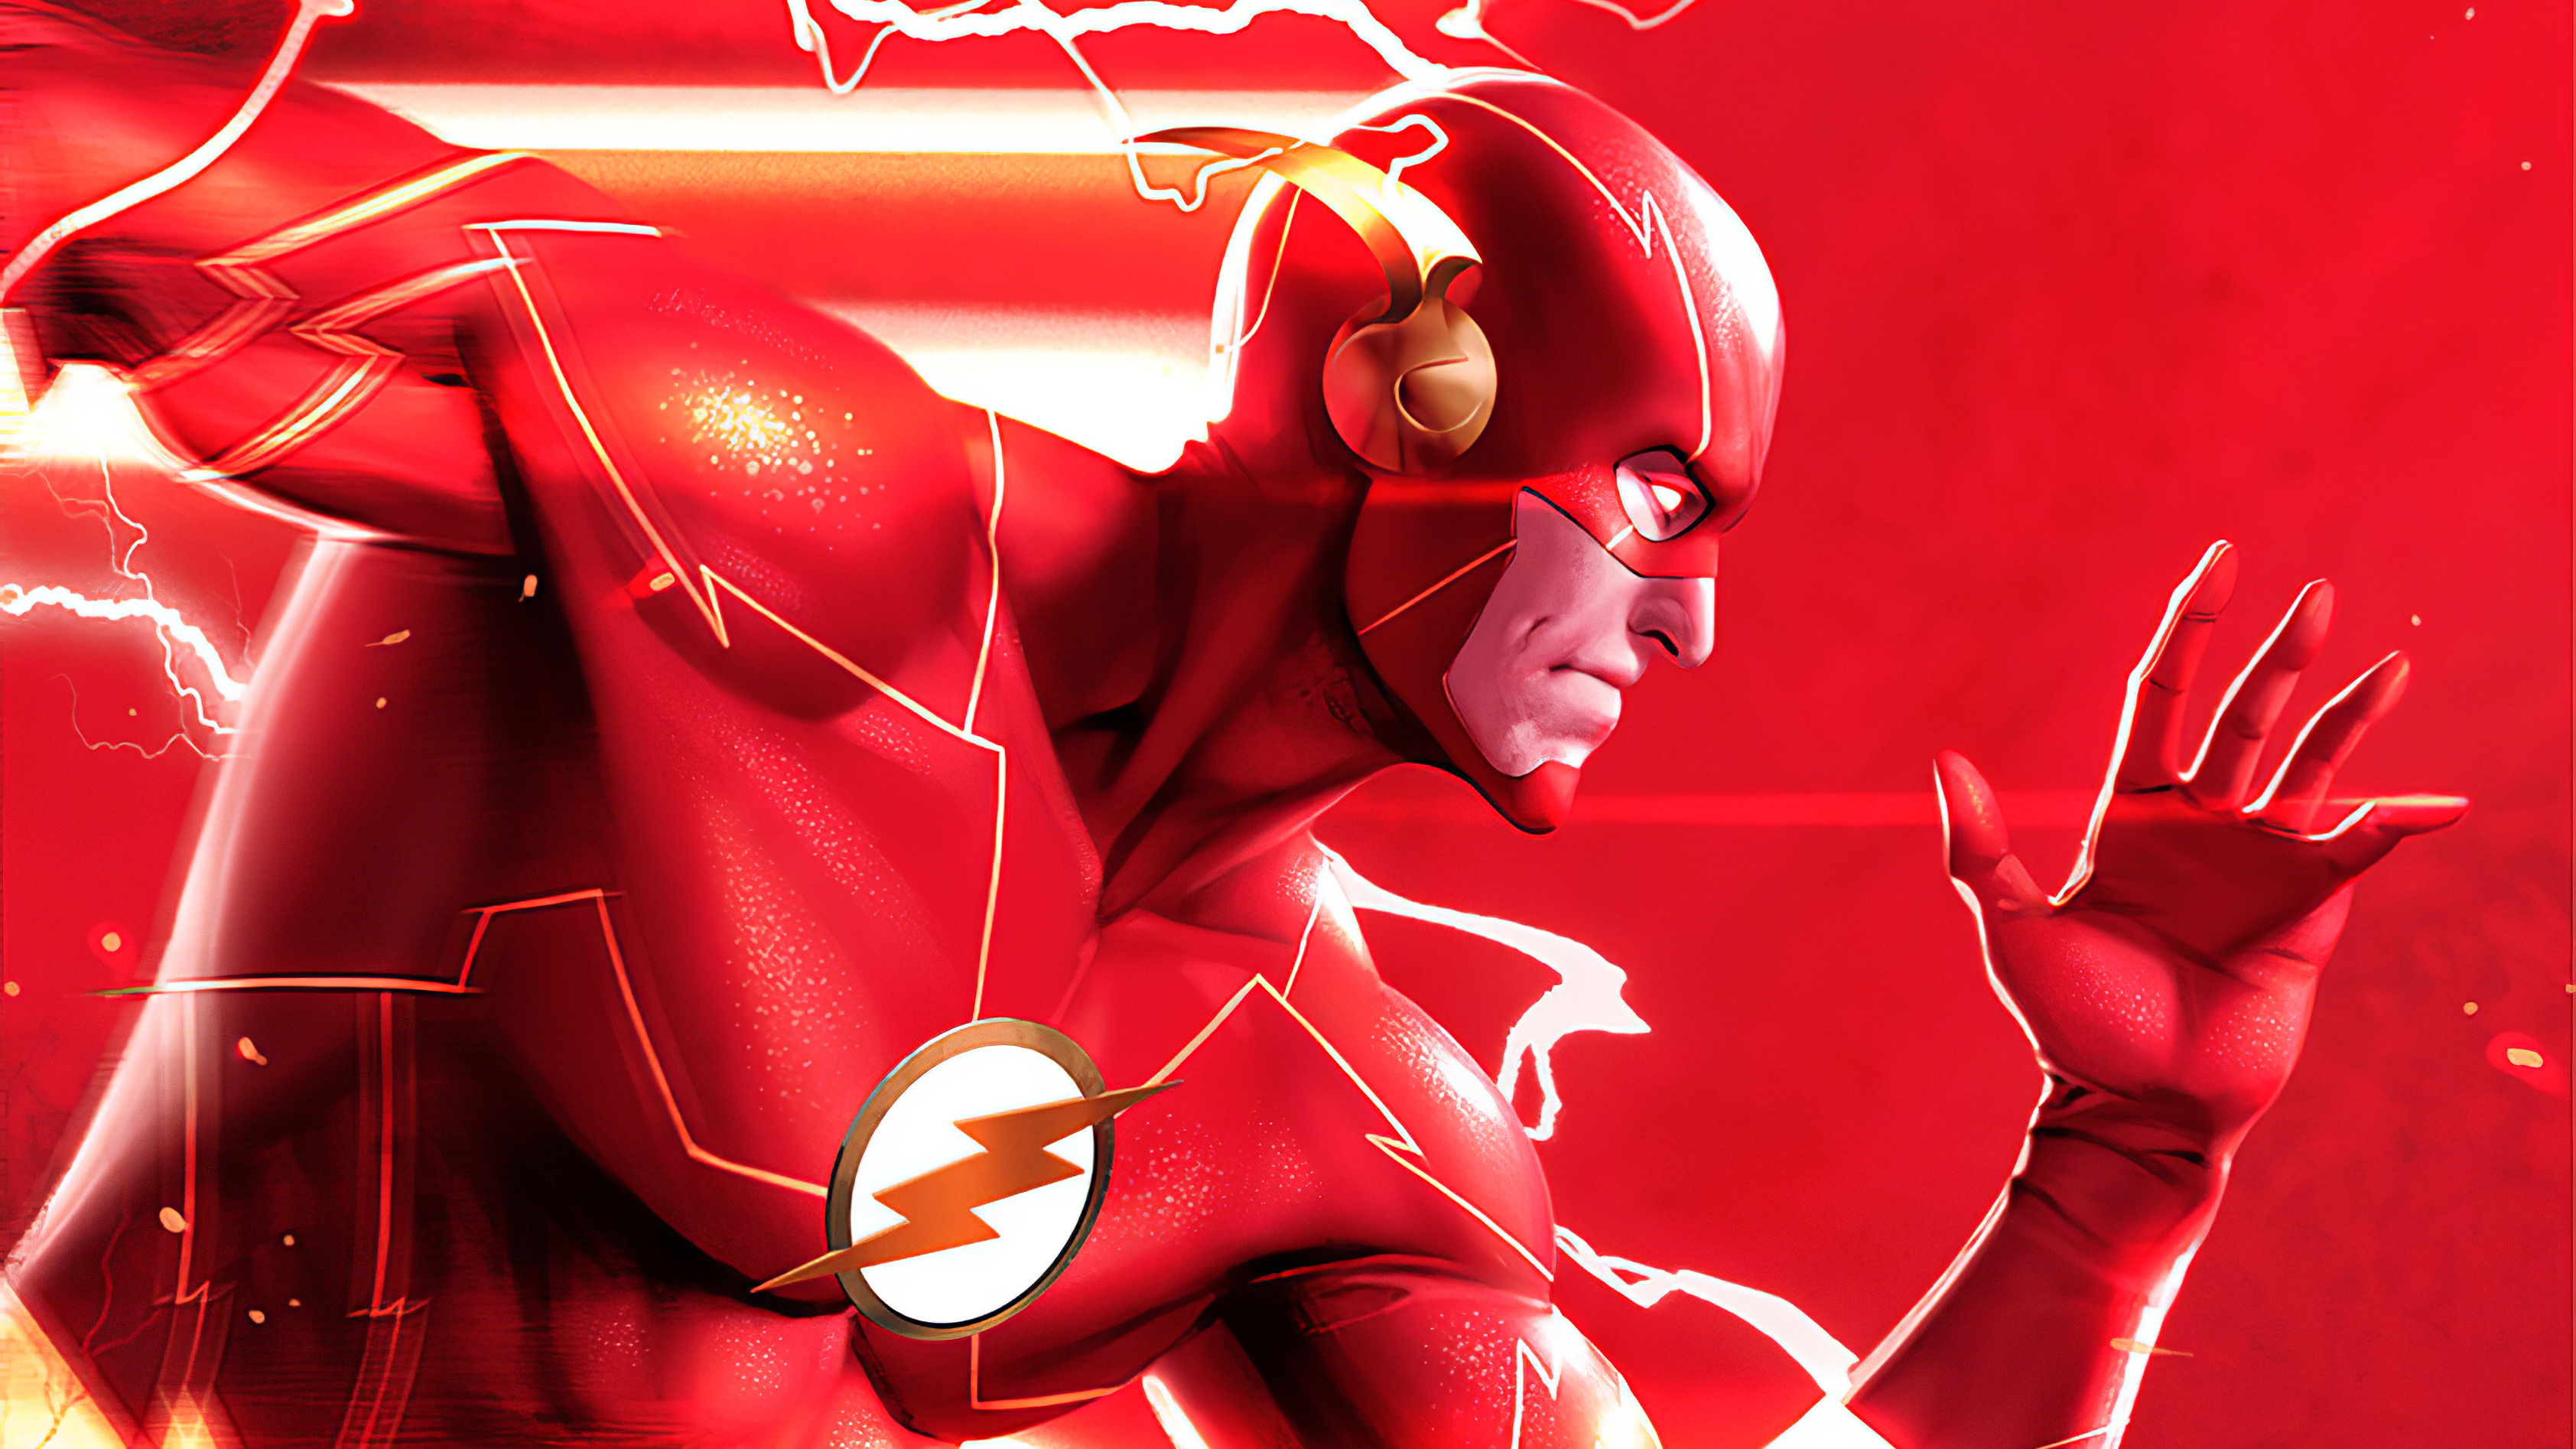 Barry Allen Flash 3368x1894